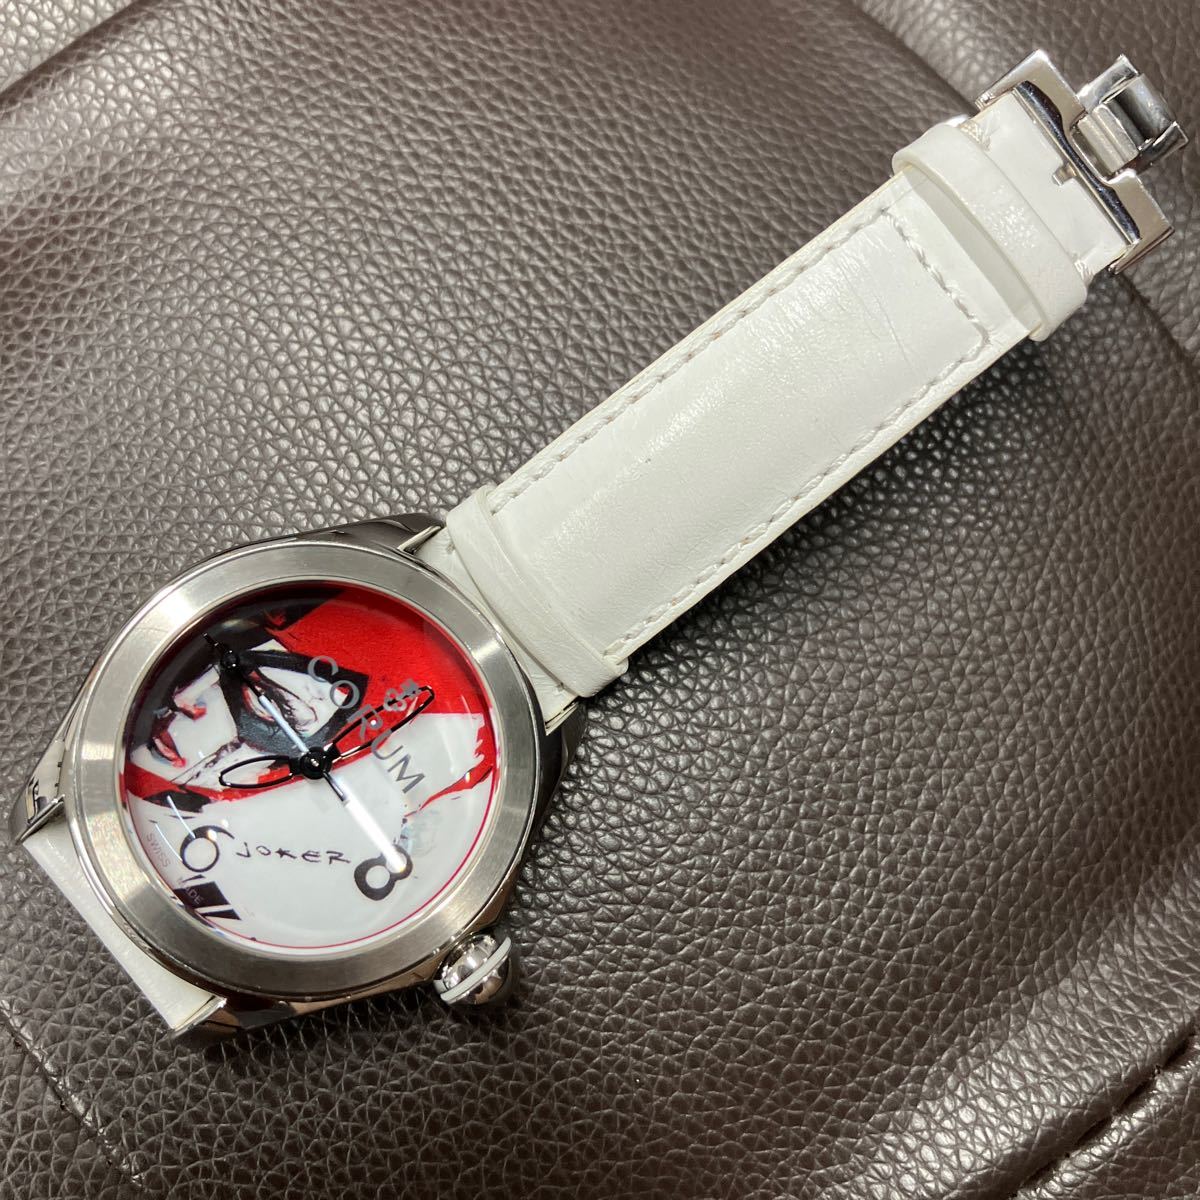  Corum Bubble редкий самозаводящиеся часы Joker обратная сторона ske прекрасный товар оригинальный ремень очень красивый товар неоригинальный специальный заказ ремень имеется 